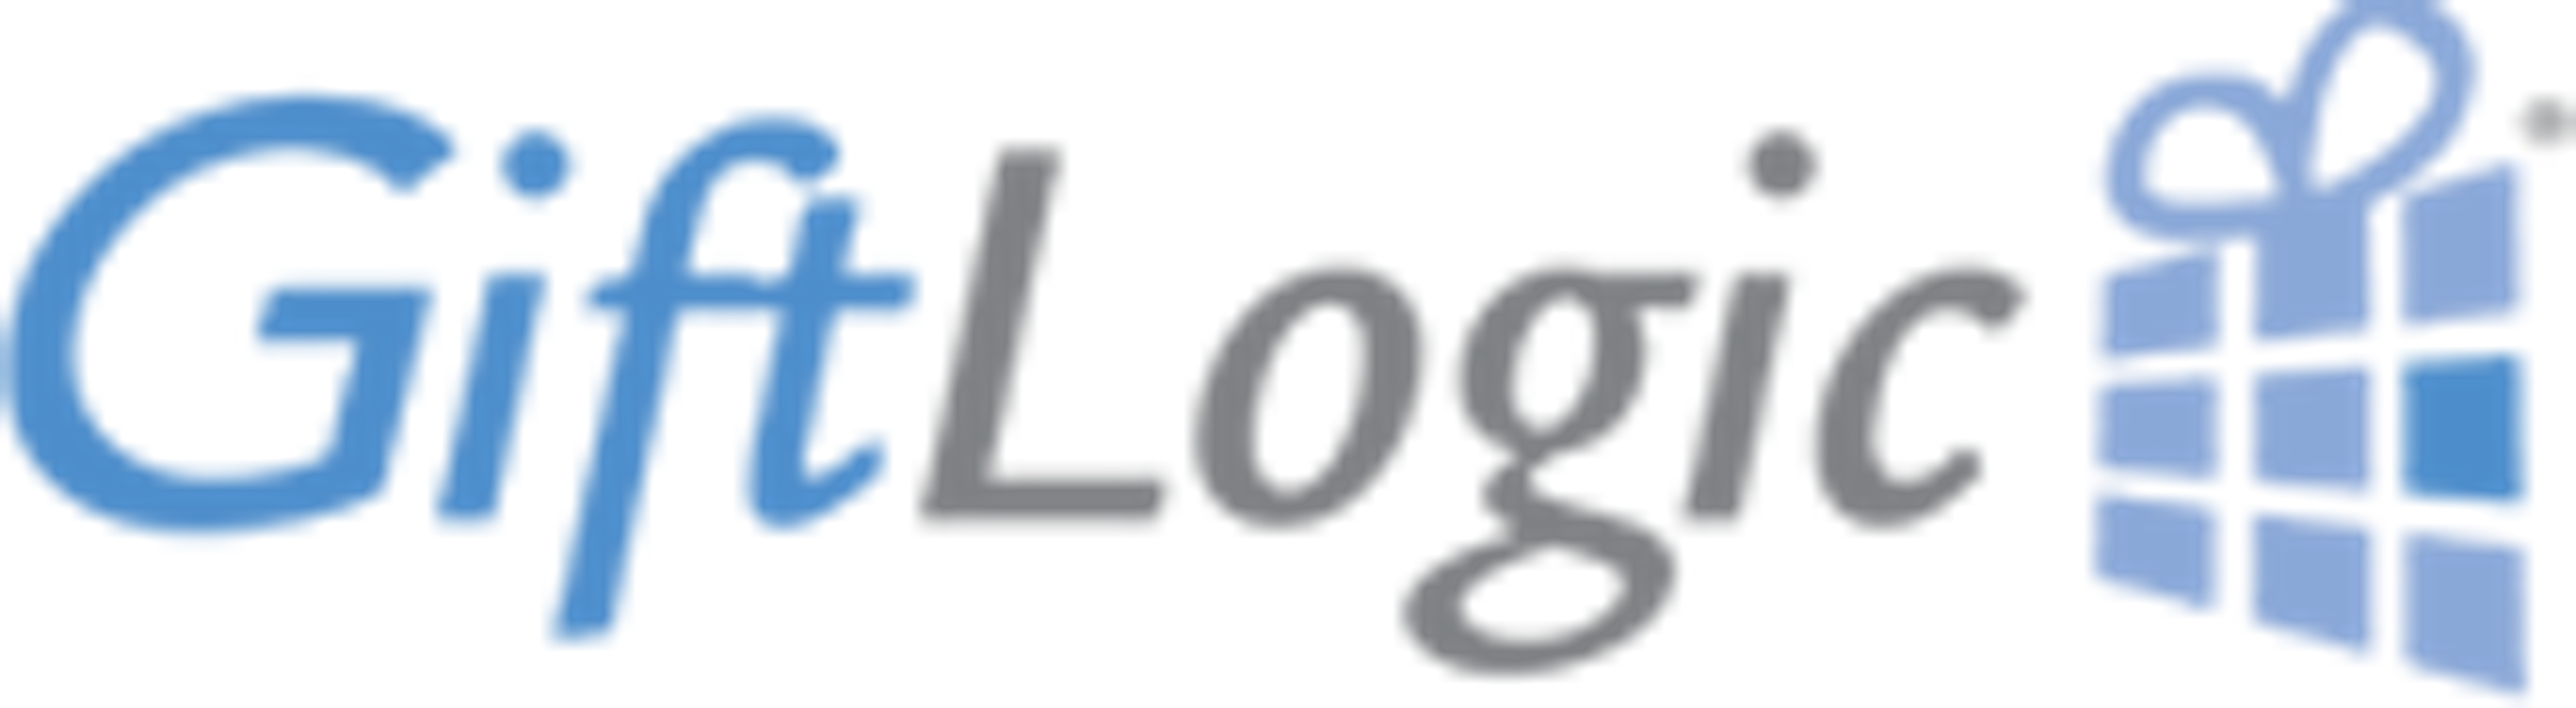 GiftLogic Logo